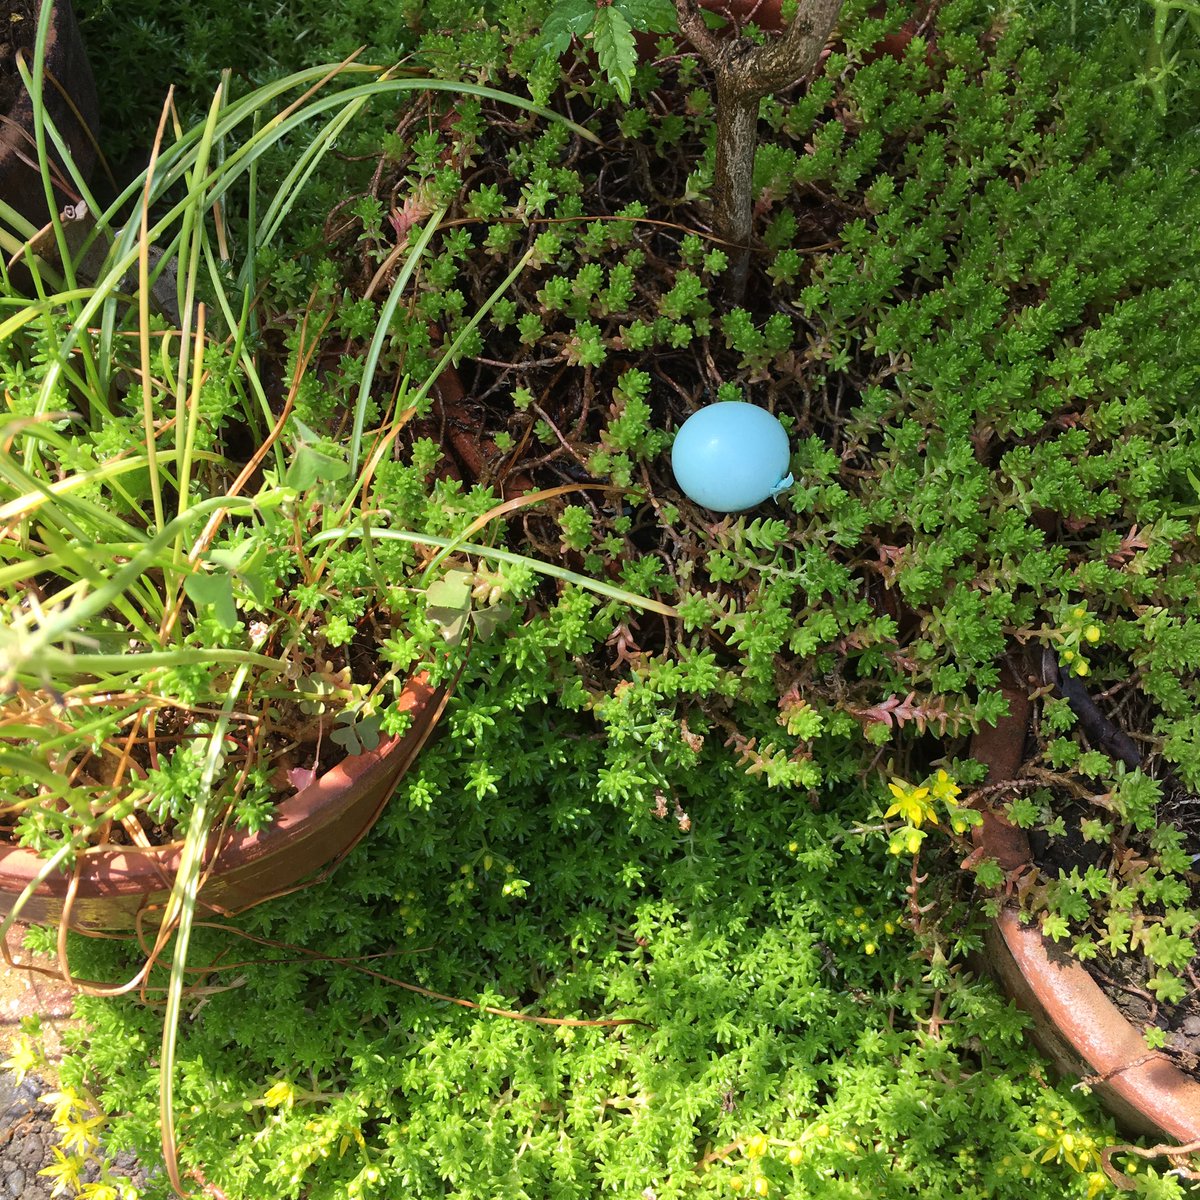 寅 玄関先の植木鉢に見なれない丸い水色のものが 拾ってみたら卵の殻だった 調べてみたらムクドリのものみたい 綺麗な水色